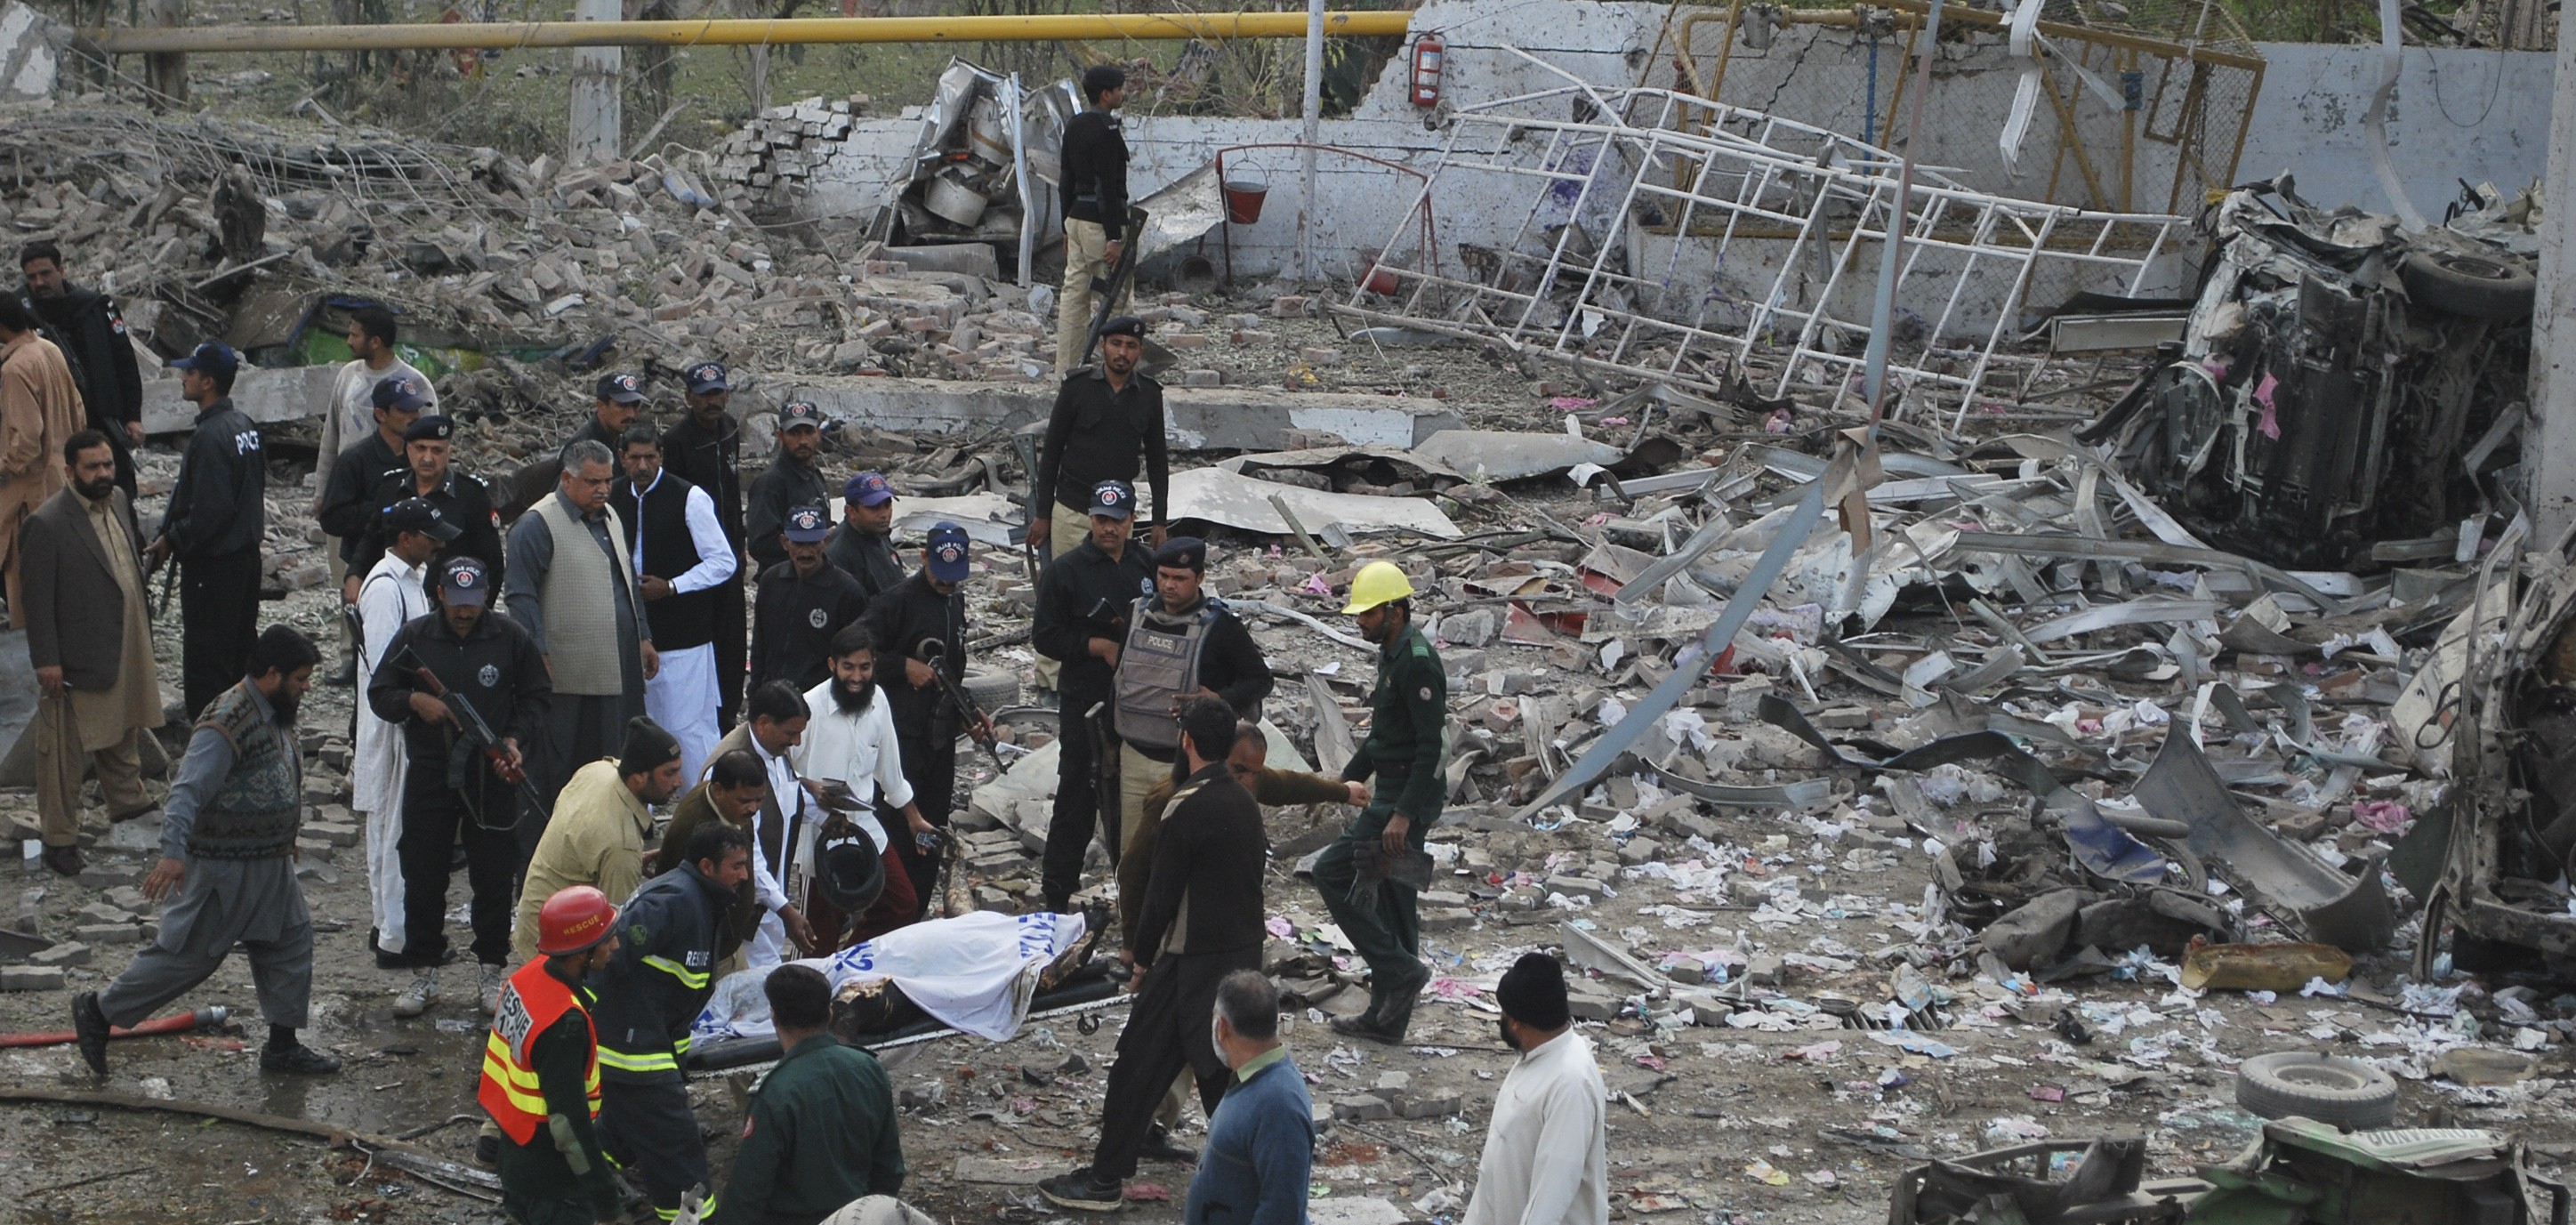 Brott och straff, Attentat, Pakistan, Bensinmack, Bombdåd